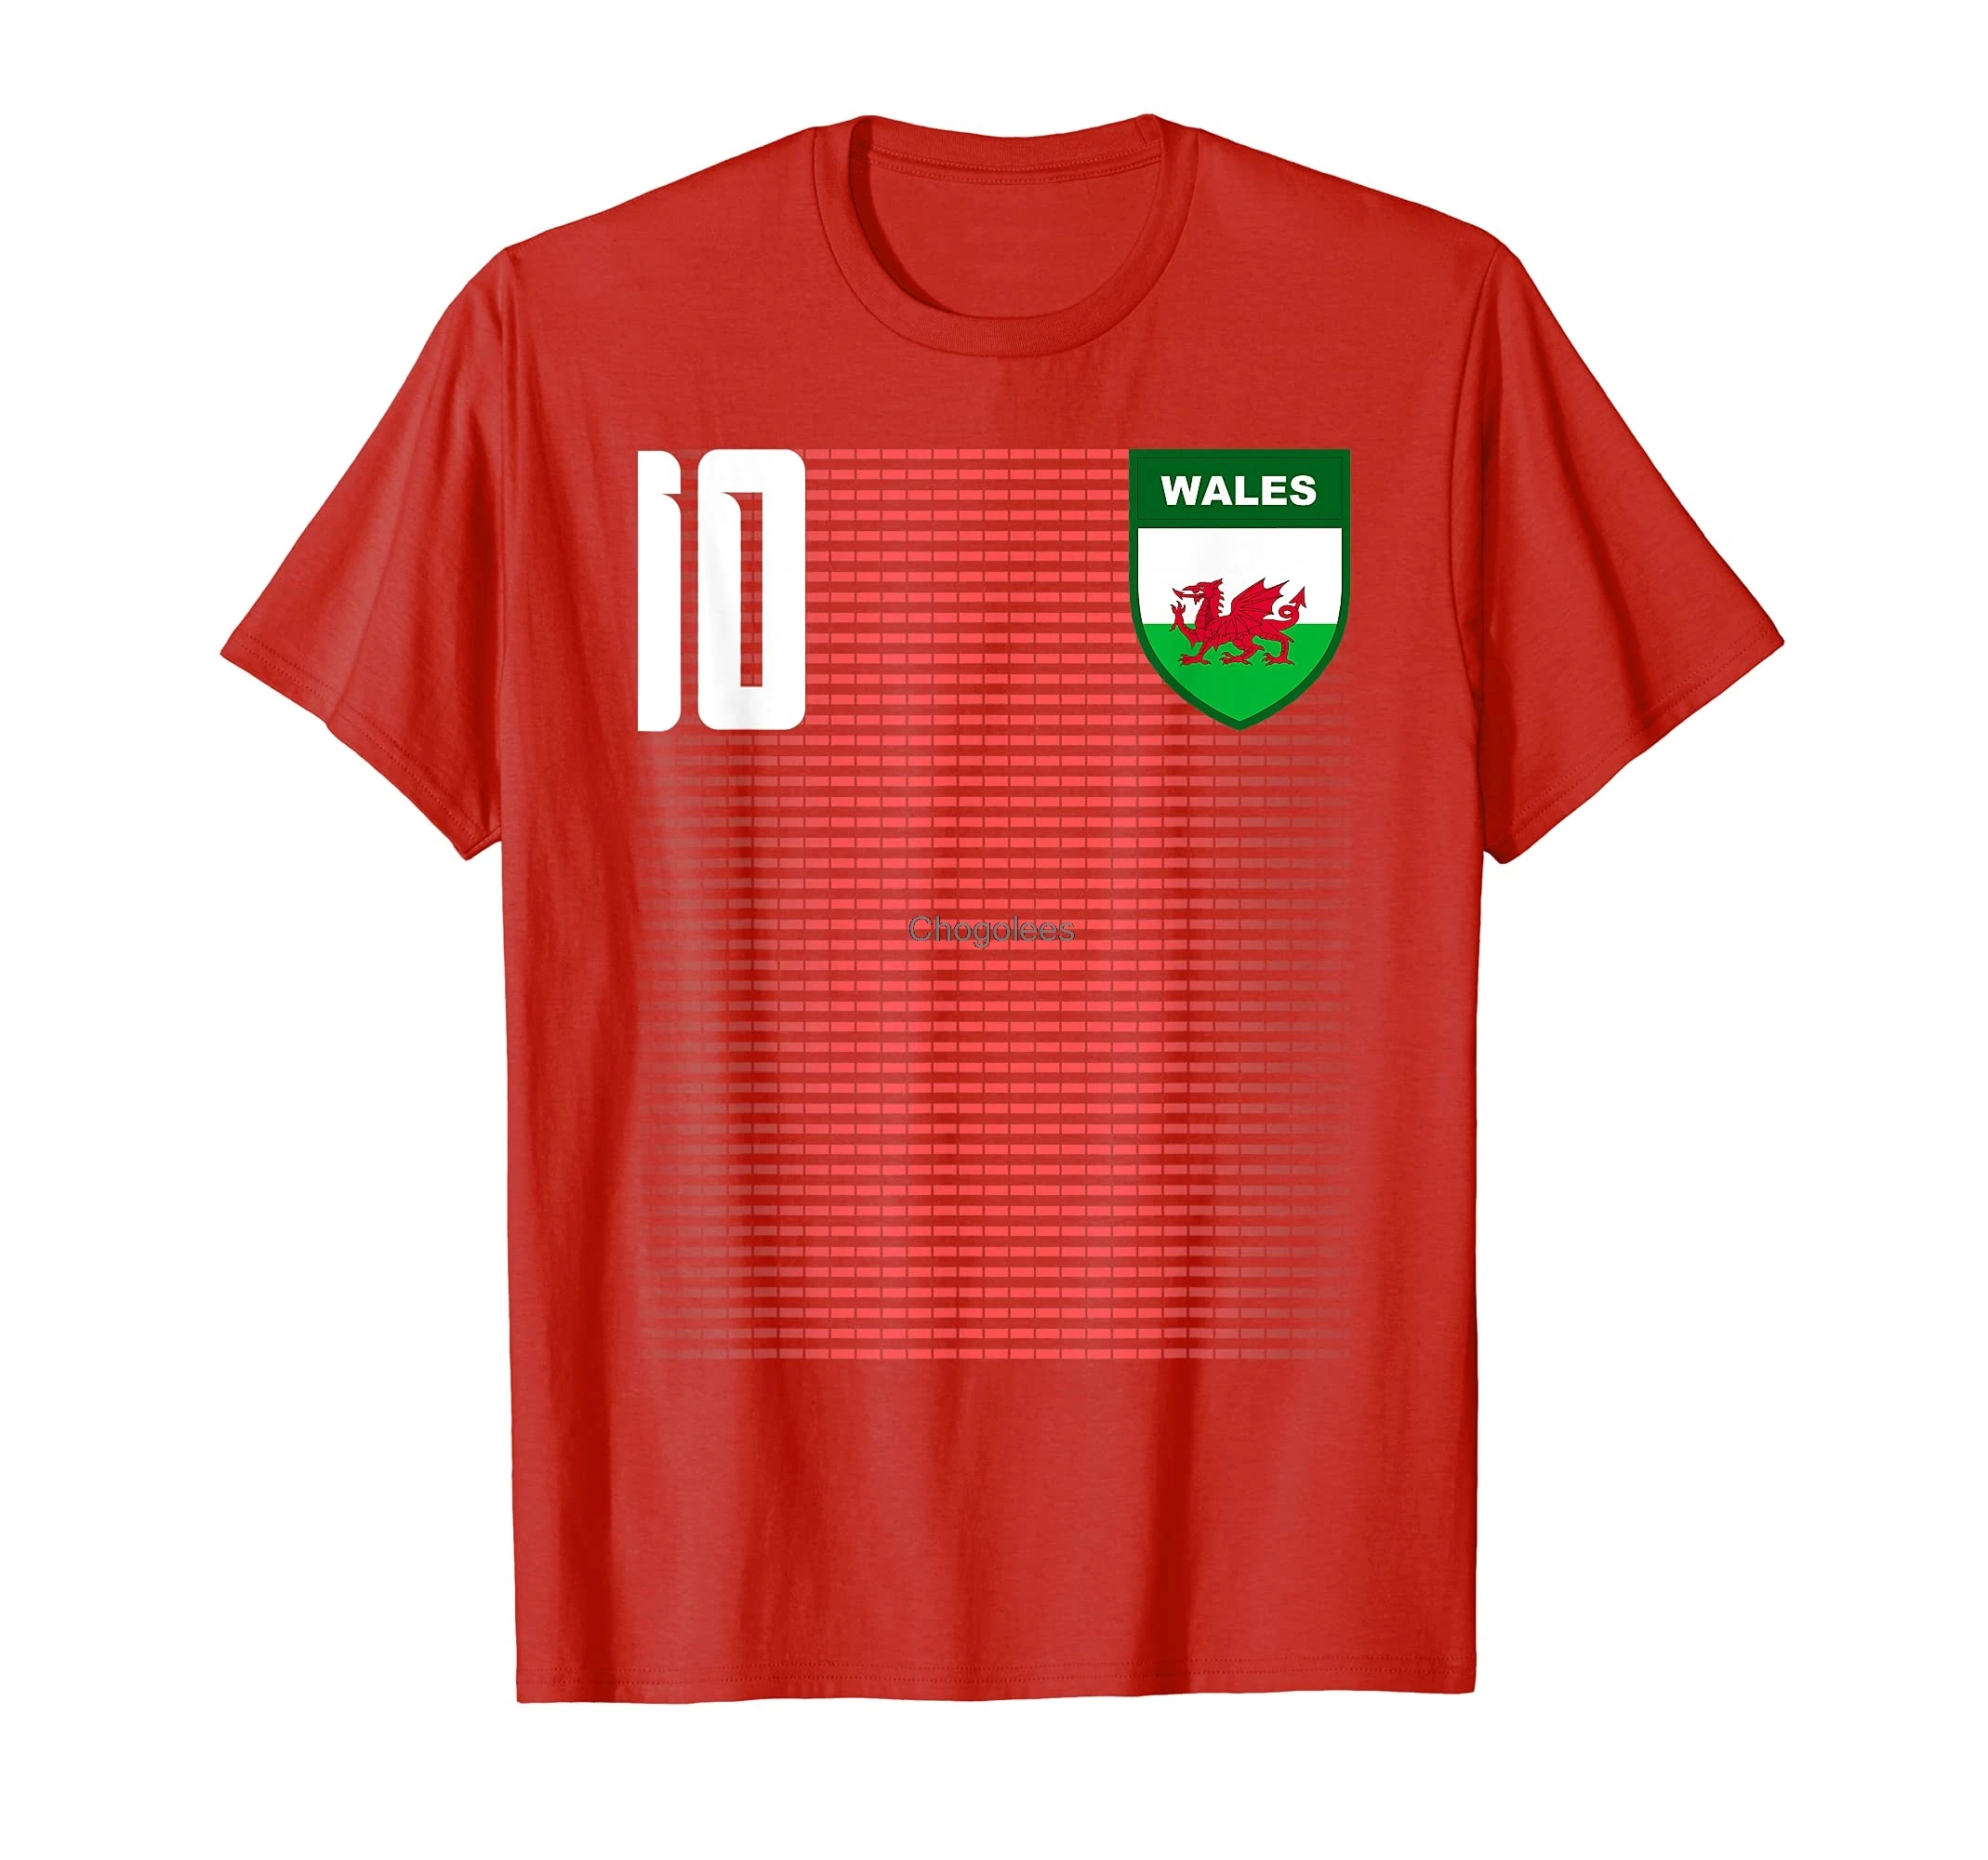 Welsh Wales Futboll Soccer Jersey T-Shirt